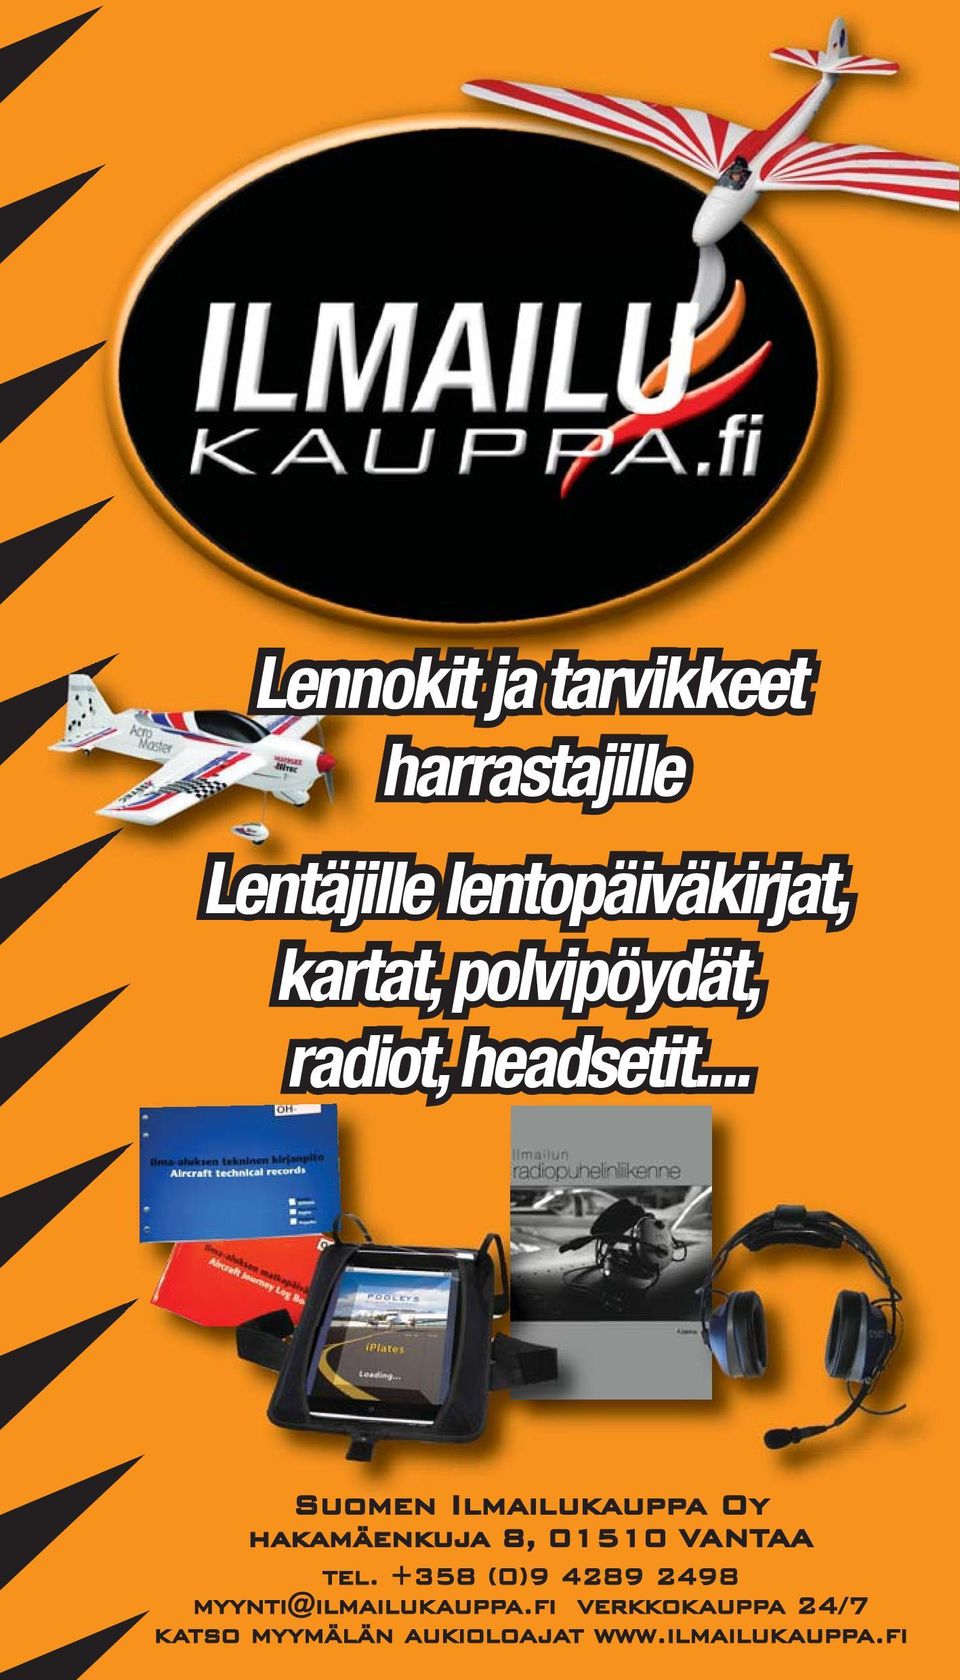 .. Suomen Ilmailukauppa Oy hakamäenkuja 8, 01510 VANTAA tel.